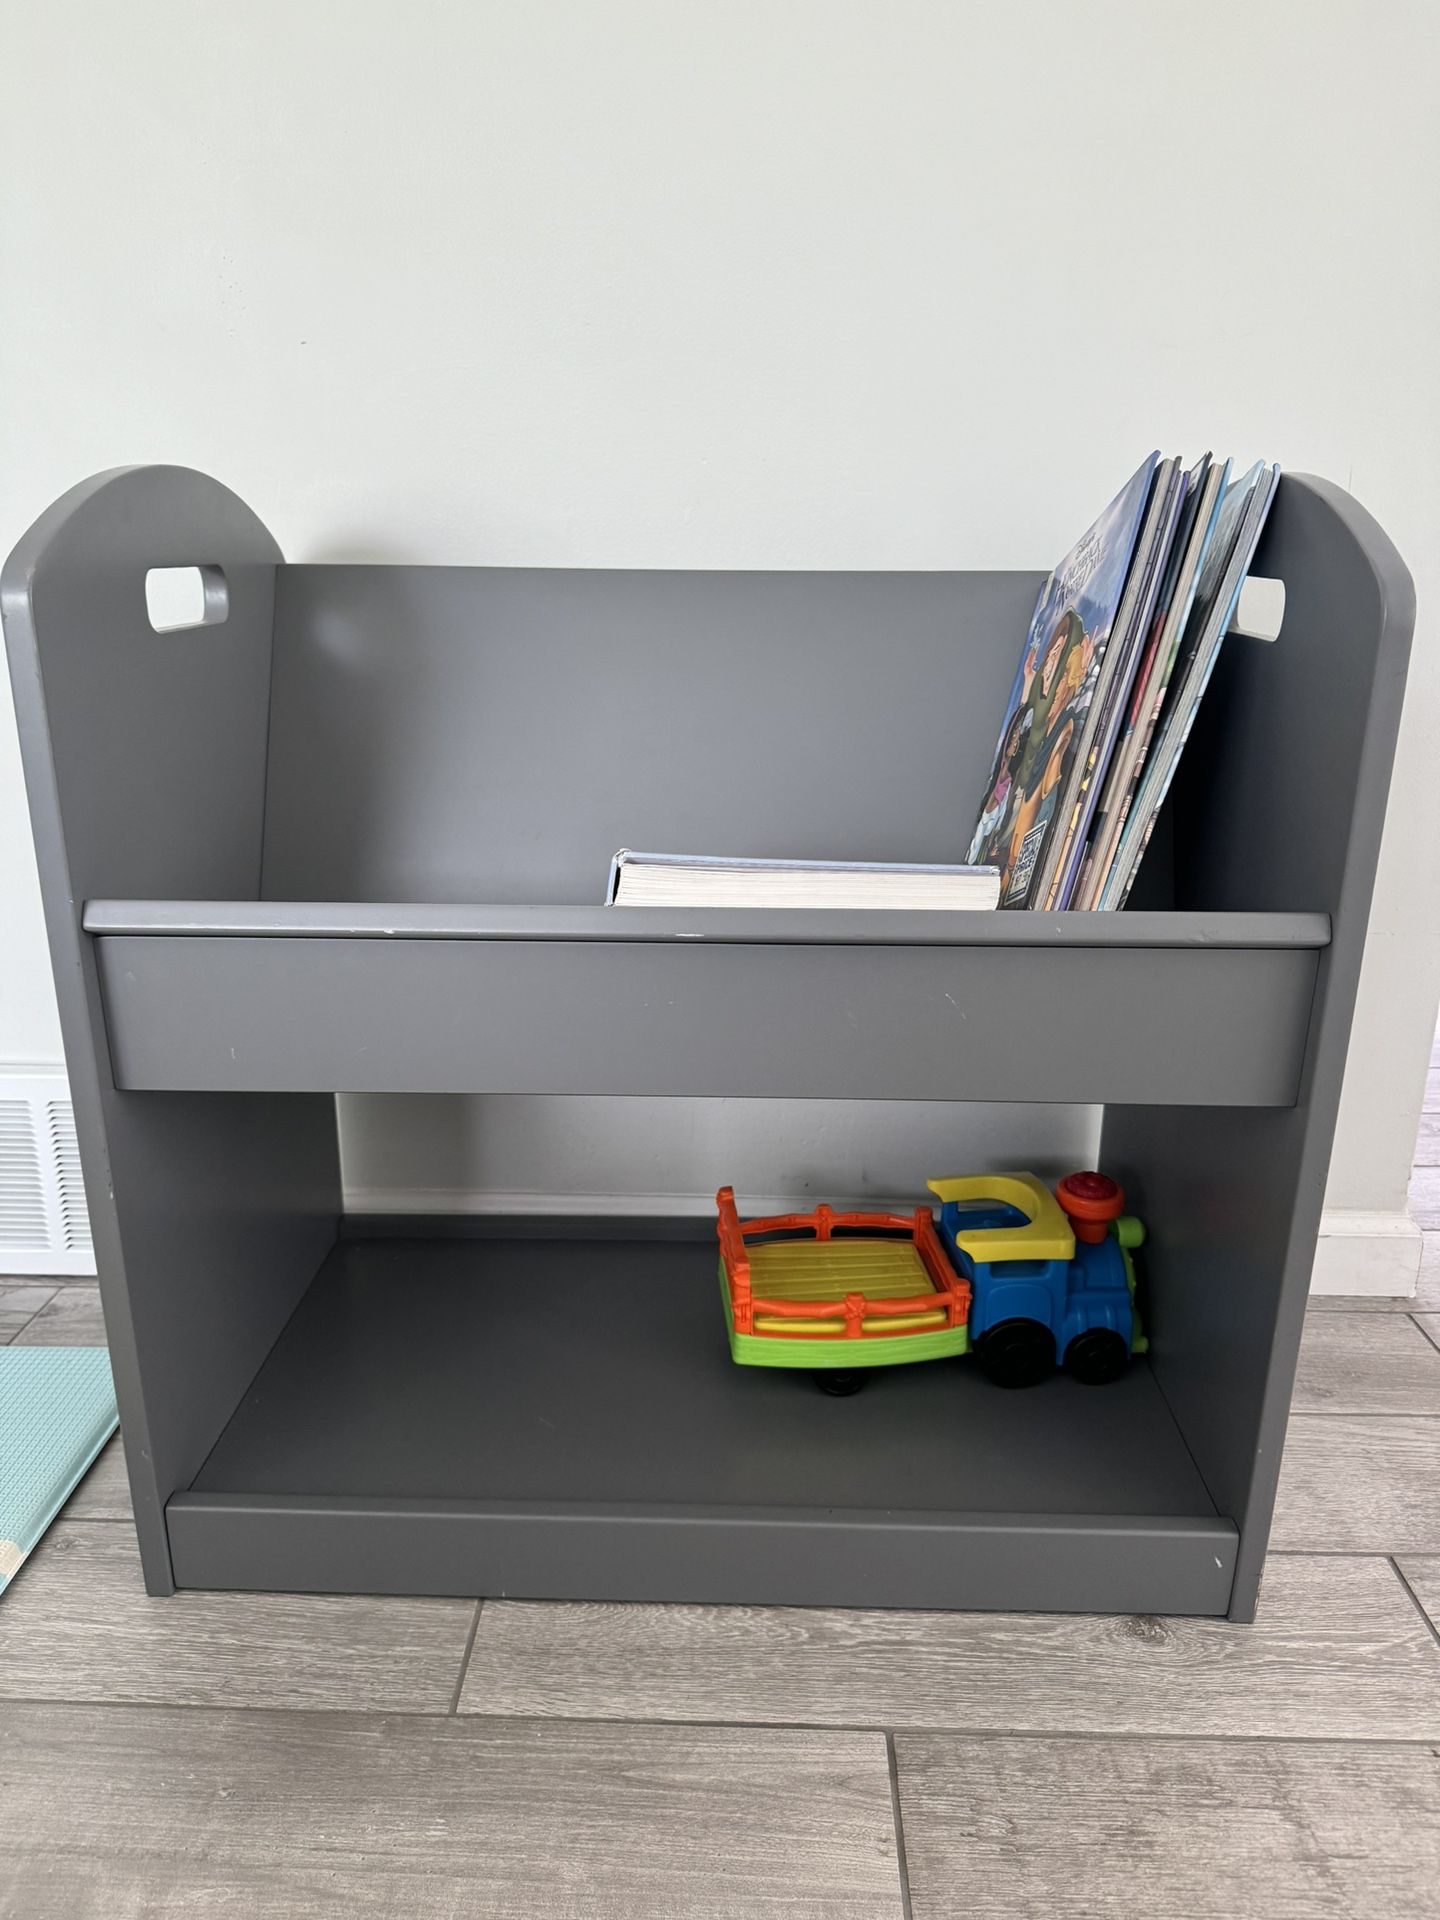 Book/toys Storage Shelf 